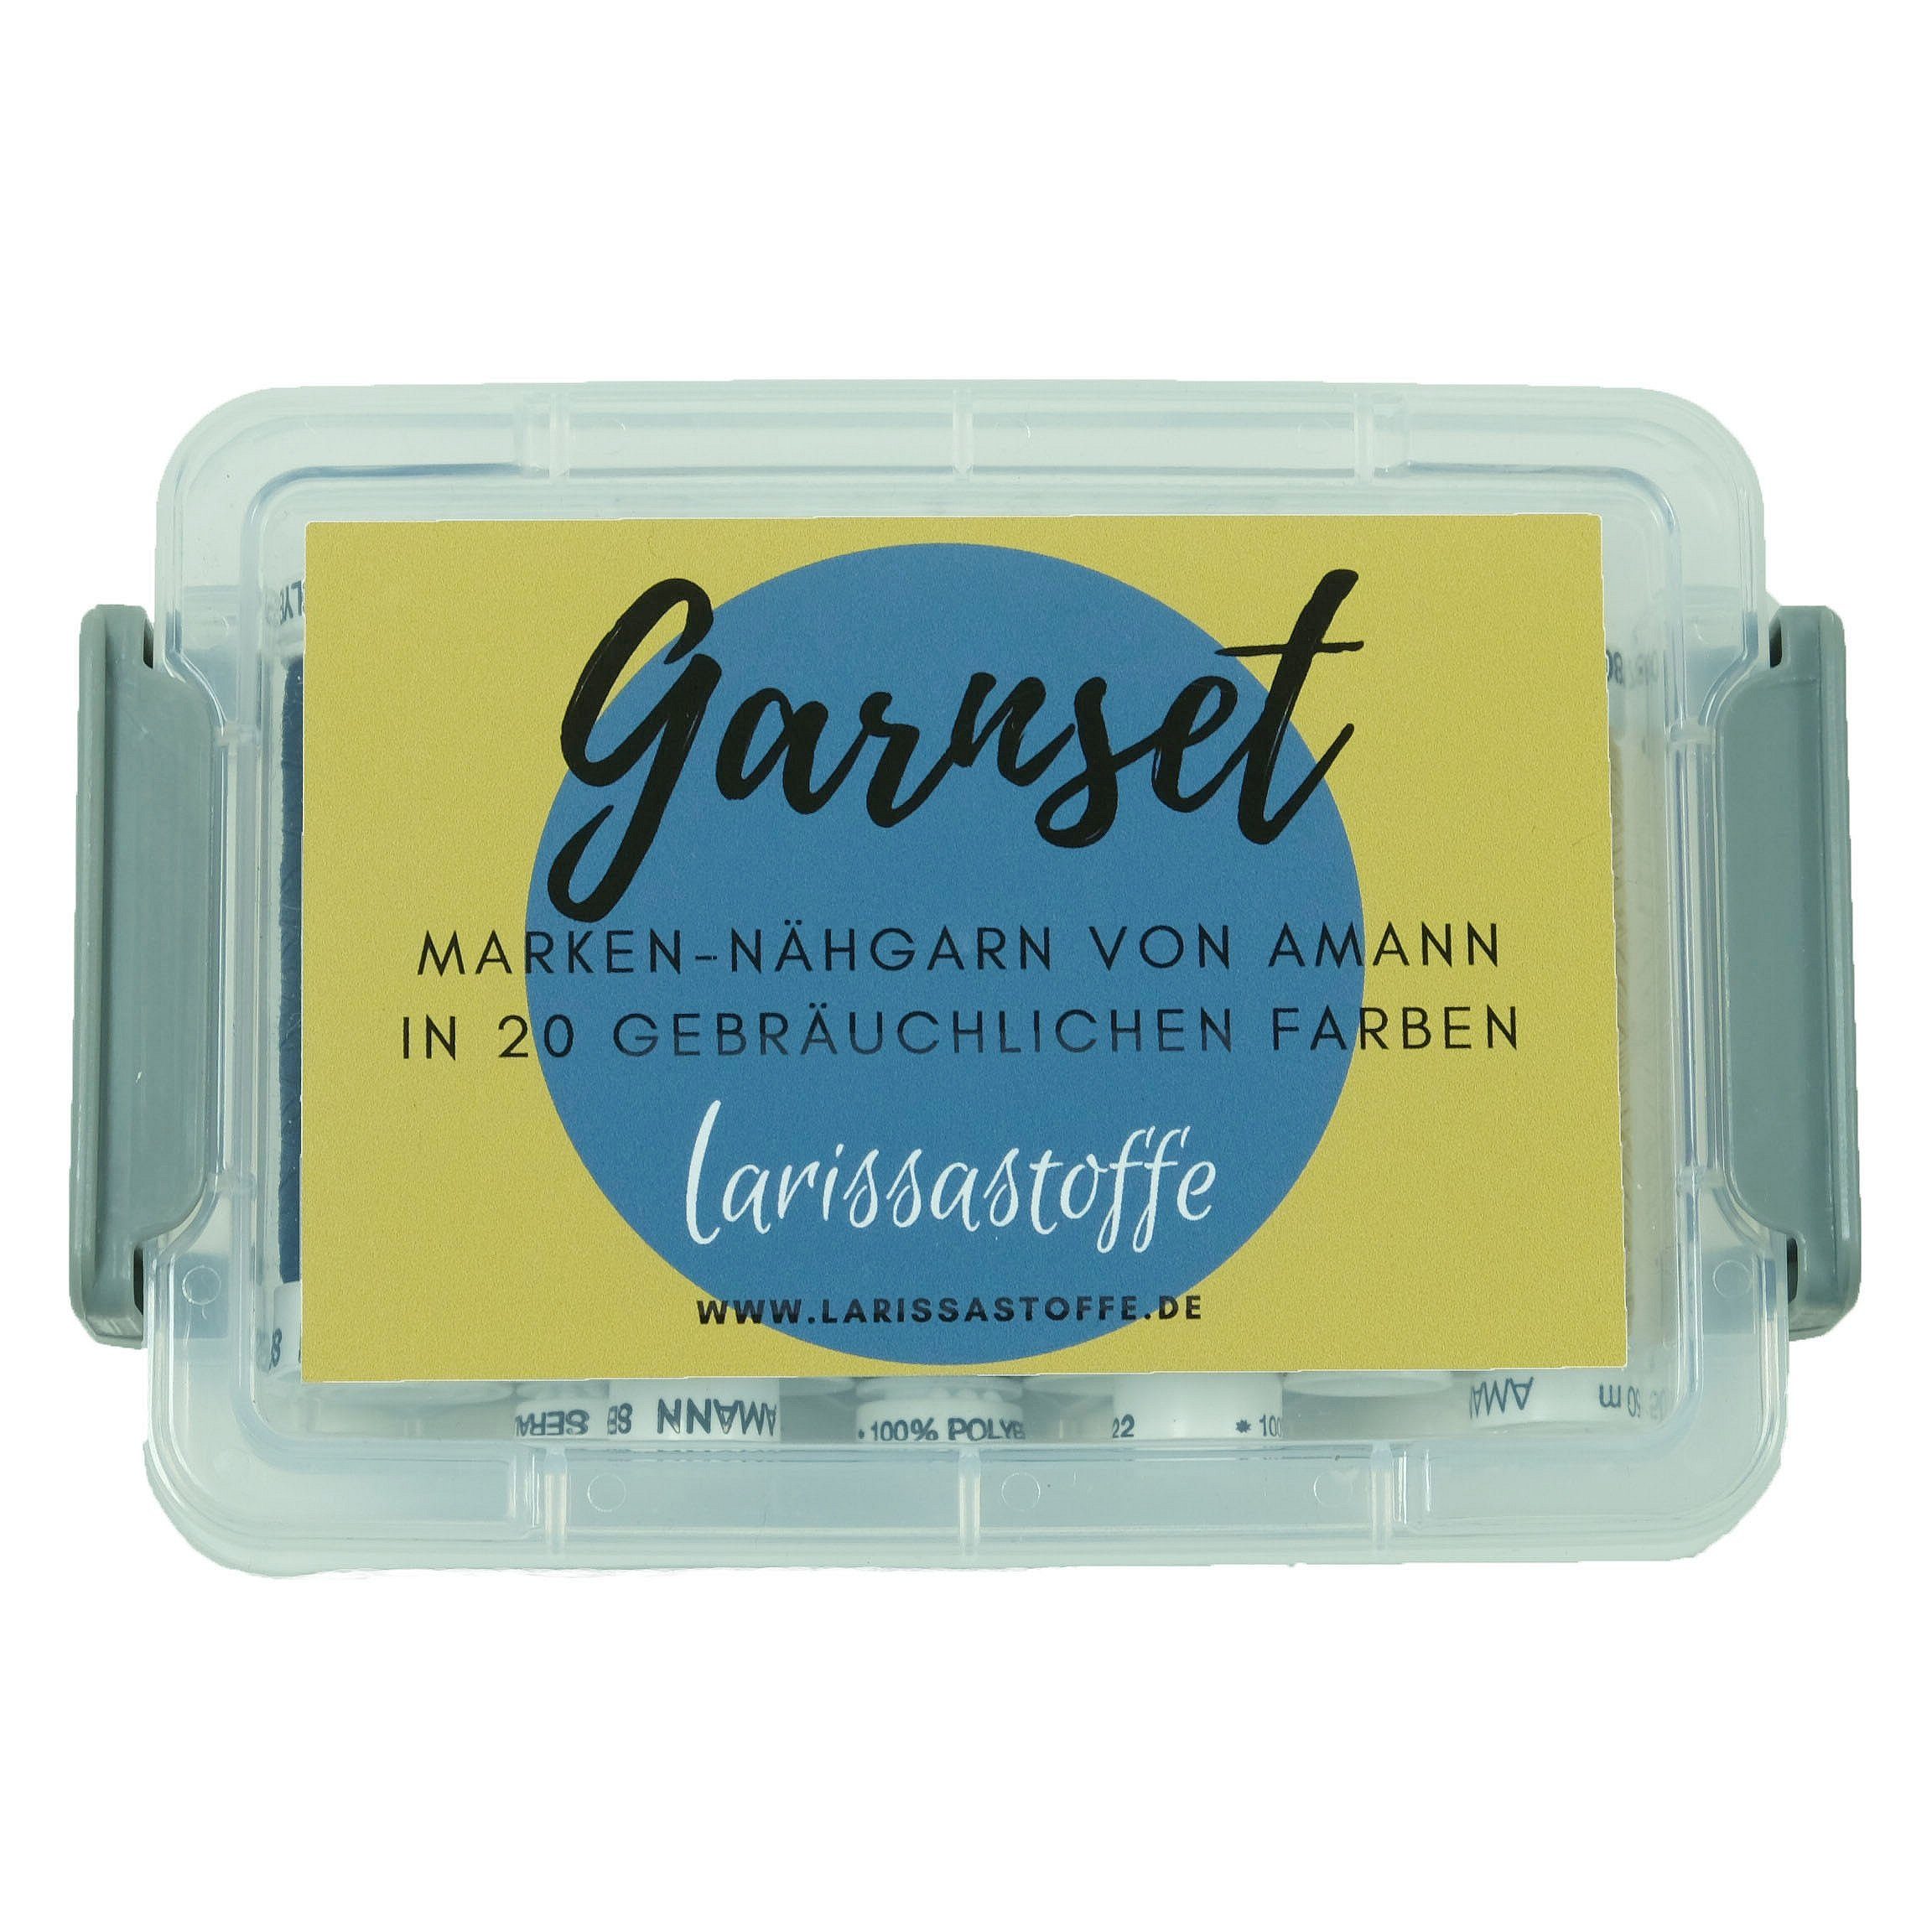 Box Garne larissastoffe paktischer hochwertiges Garnset MADE Nähkästchen GERMANY IN Amann-Markennähgarn Nähset in (Set),